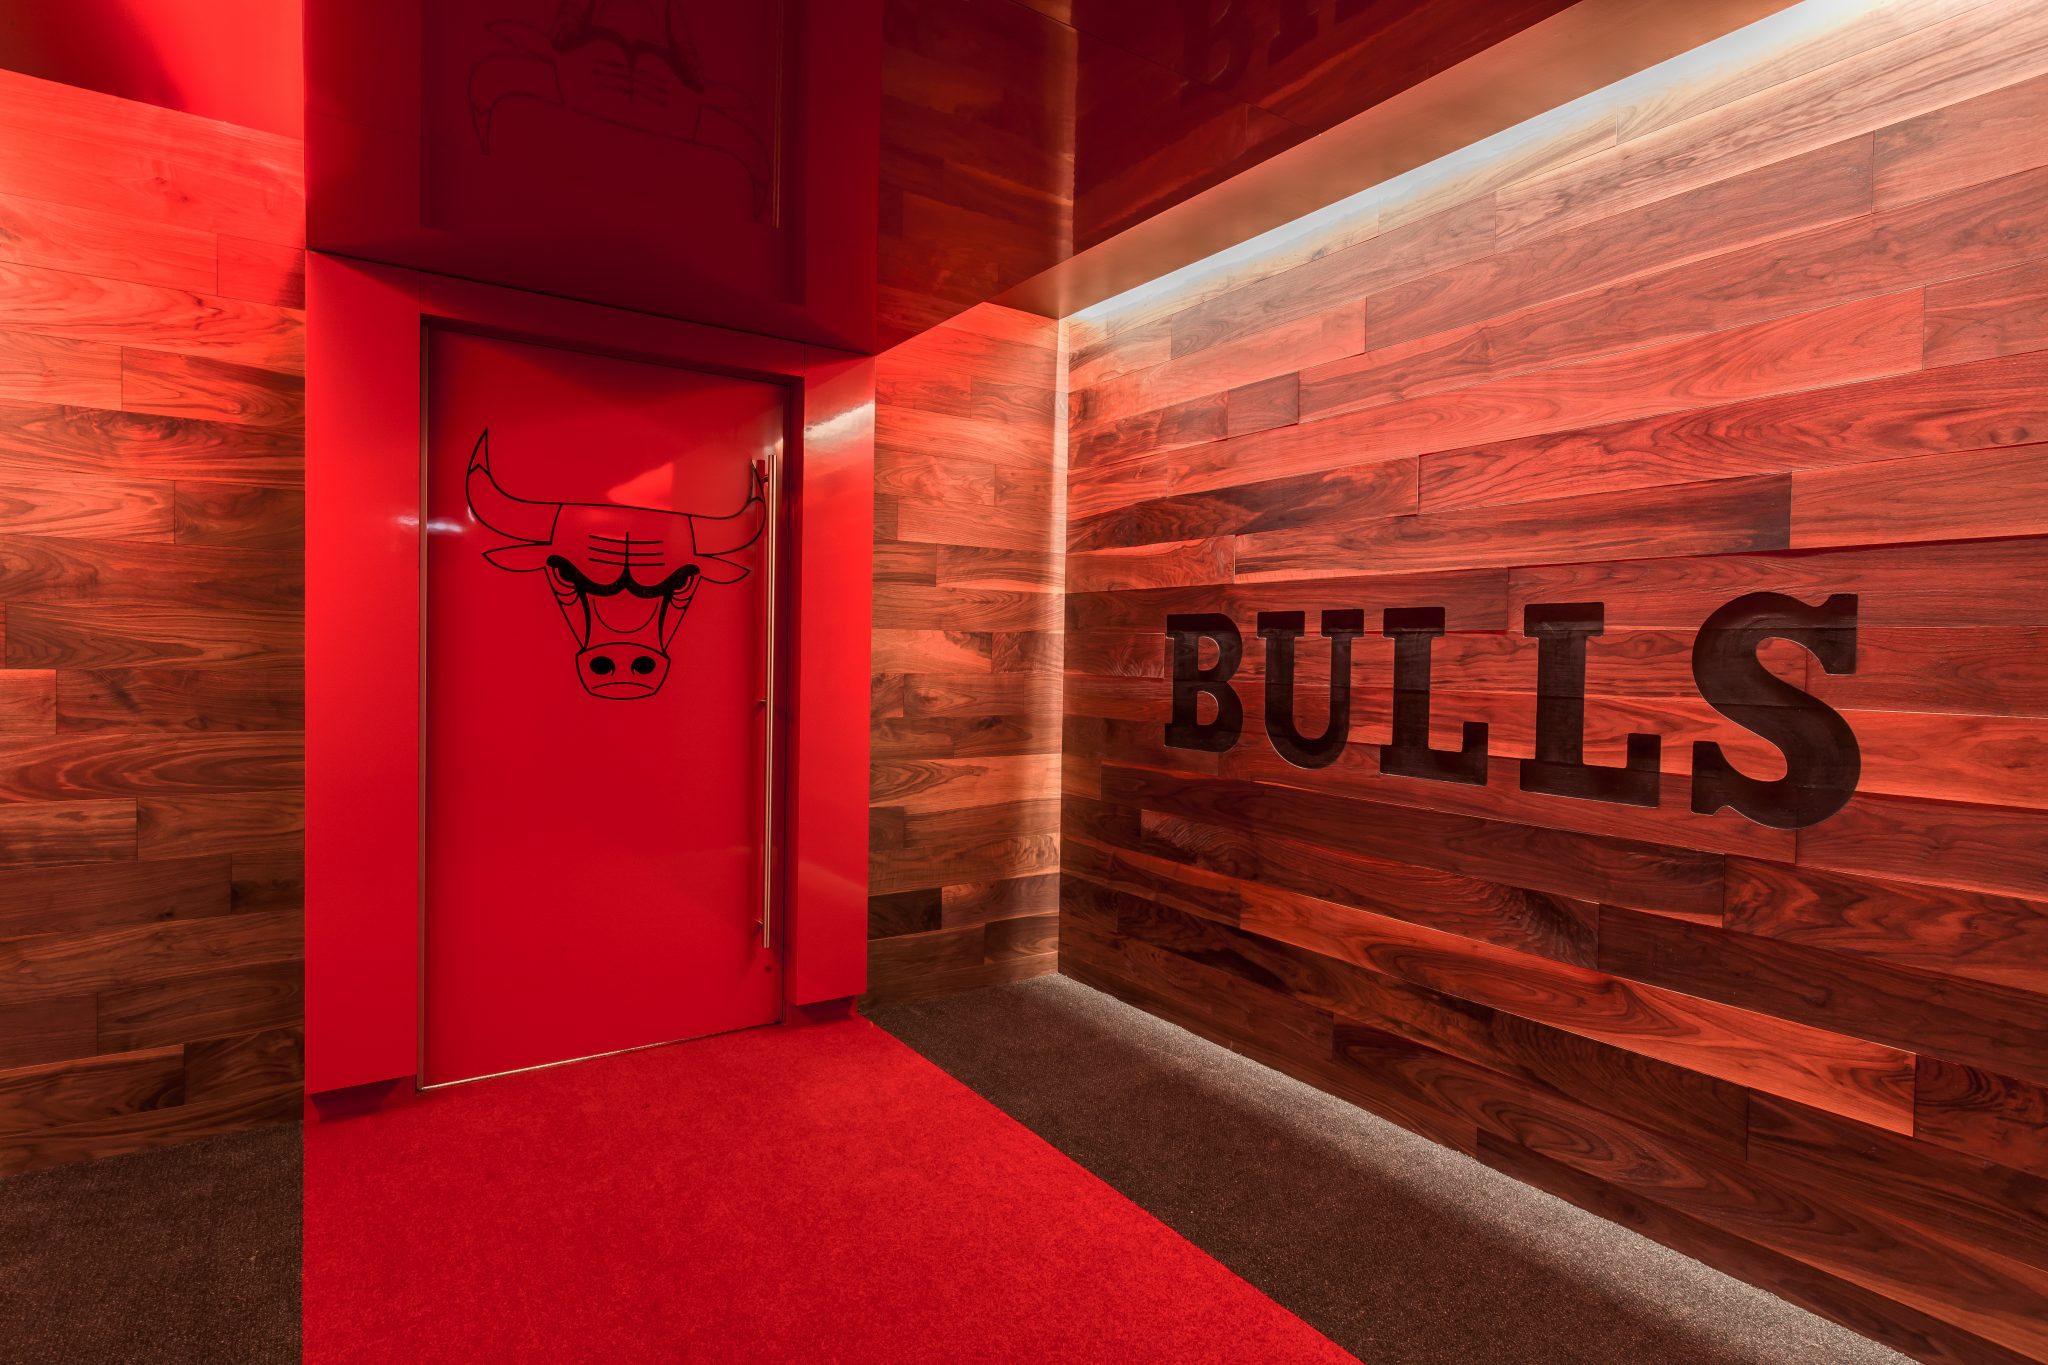 Chicago Bulls Locker Room - 360 video 